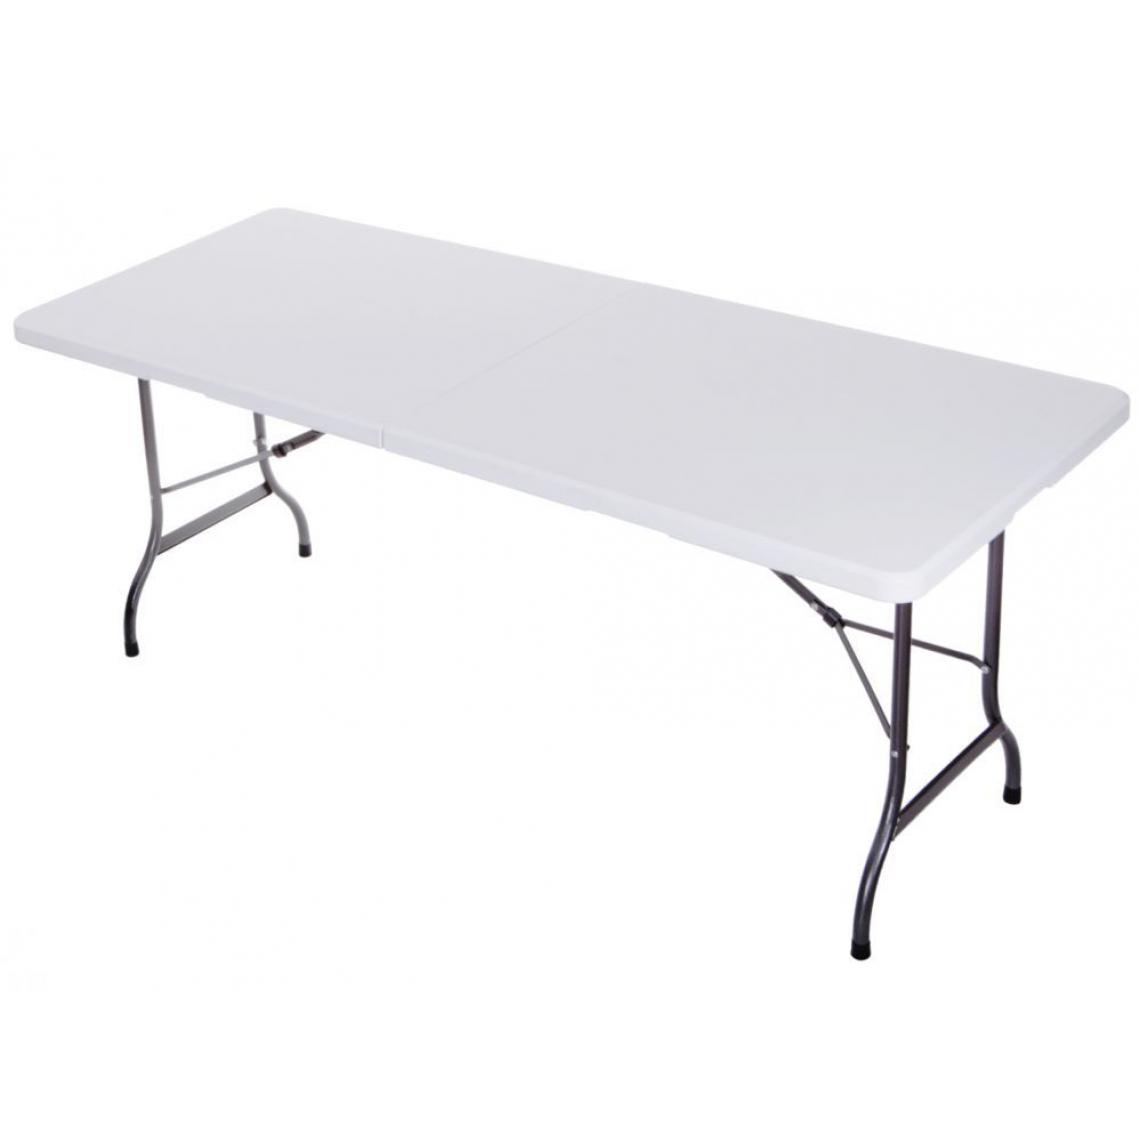 Hucoco - MSTORE | Table de banquet jardin pliable | 240x72x70 cm | Construction robuste en acier | Montage rapide et facile - Blanc - Tables de jardin